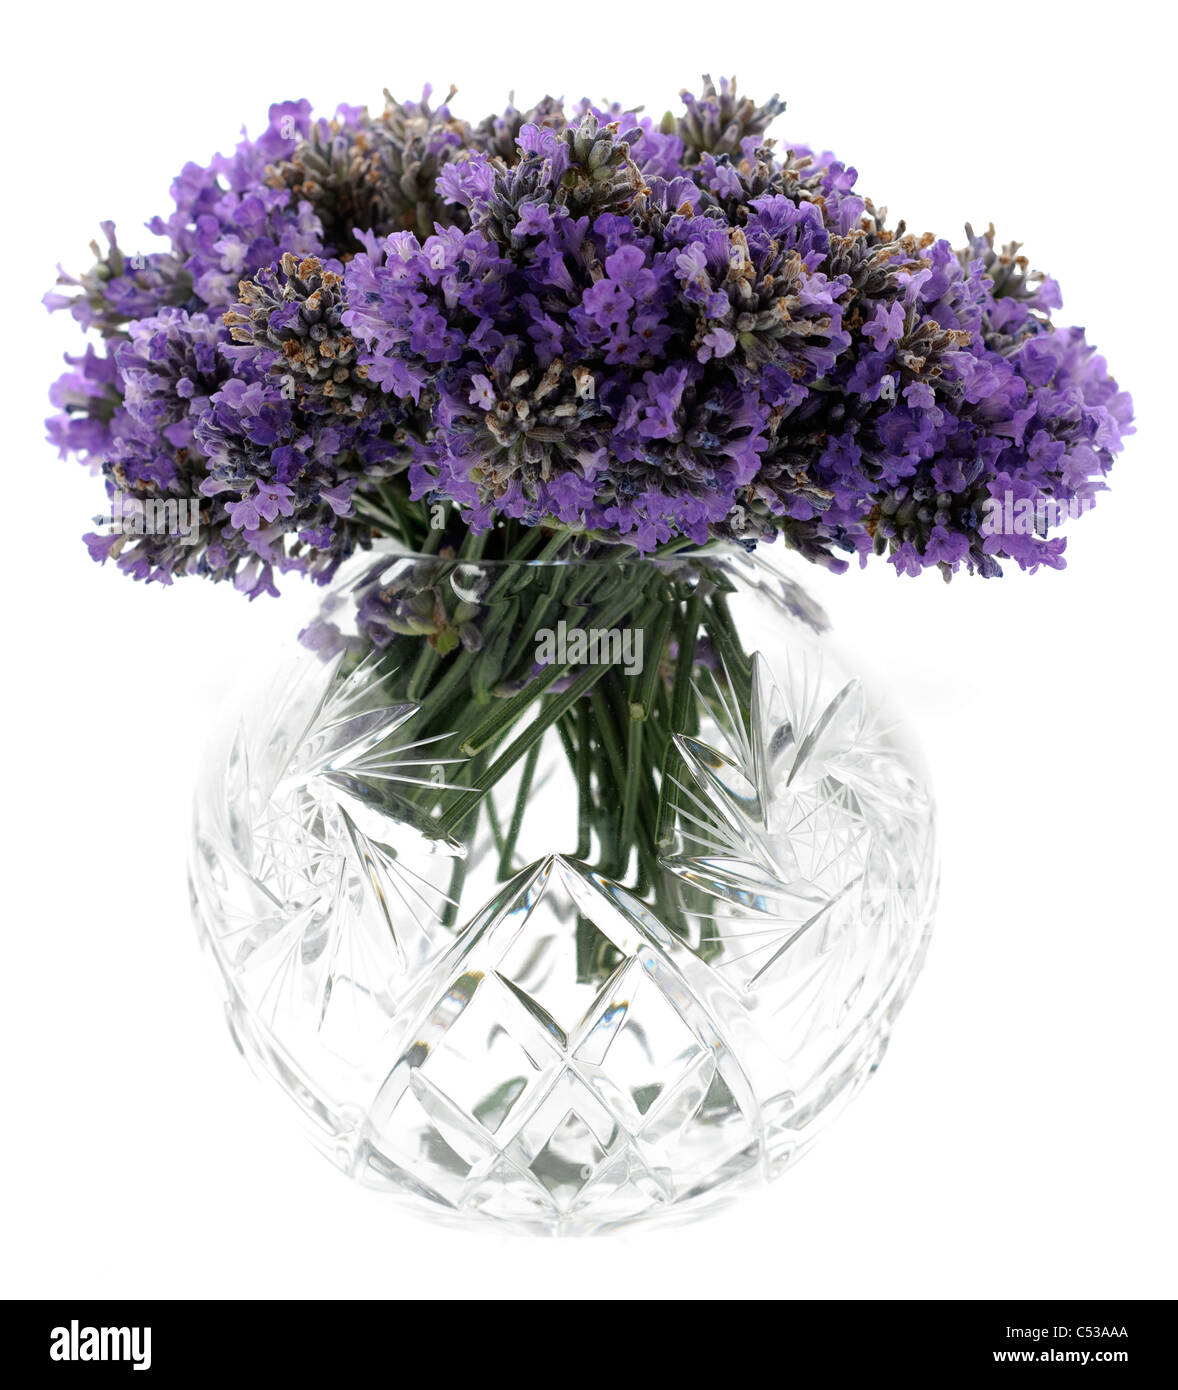 Frische Schnittblumen Lavendel in einem kreisförmigen geschliffenes Glas-Behälter Stockfoto